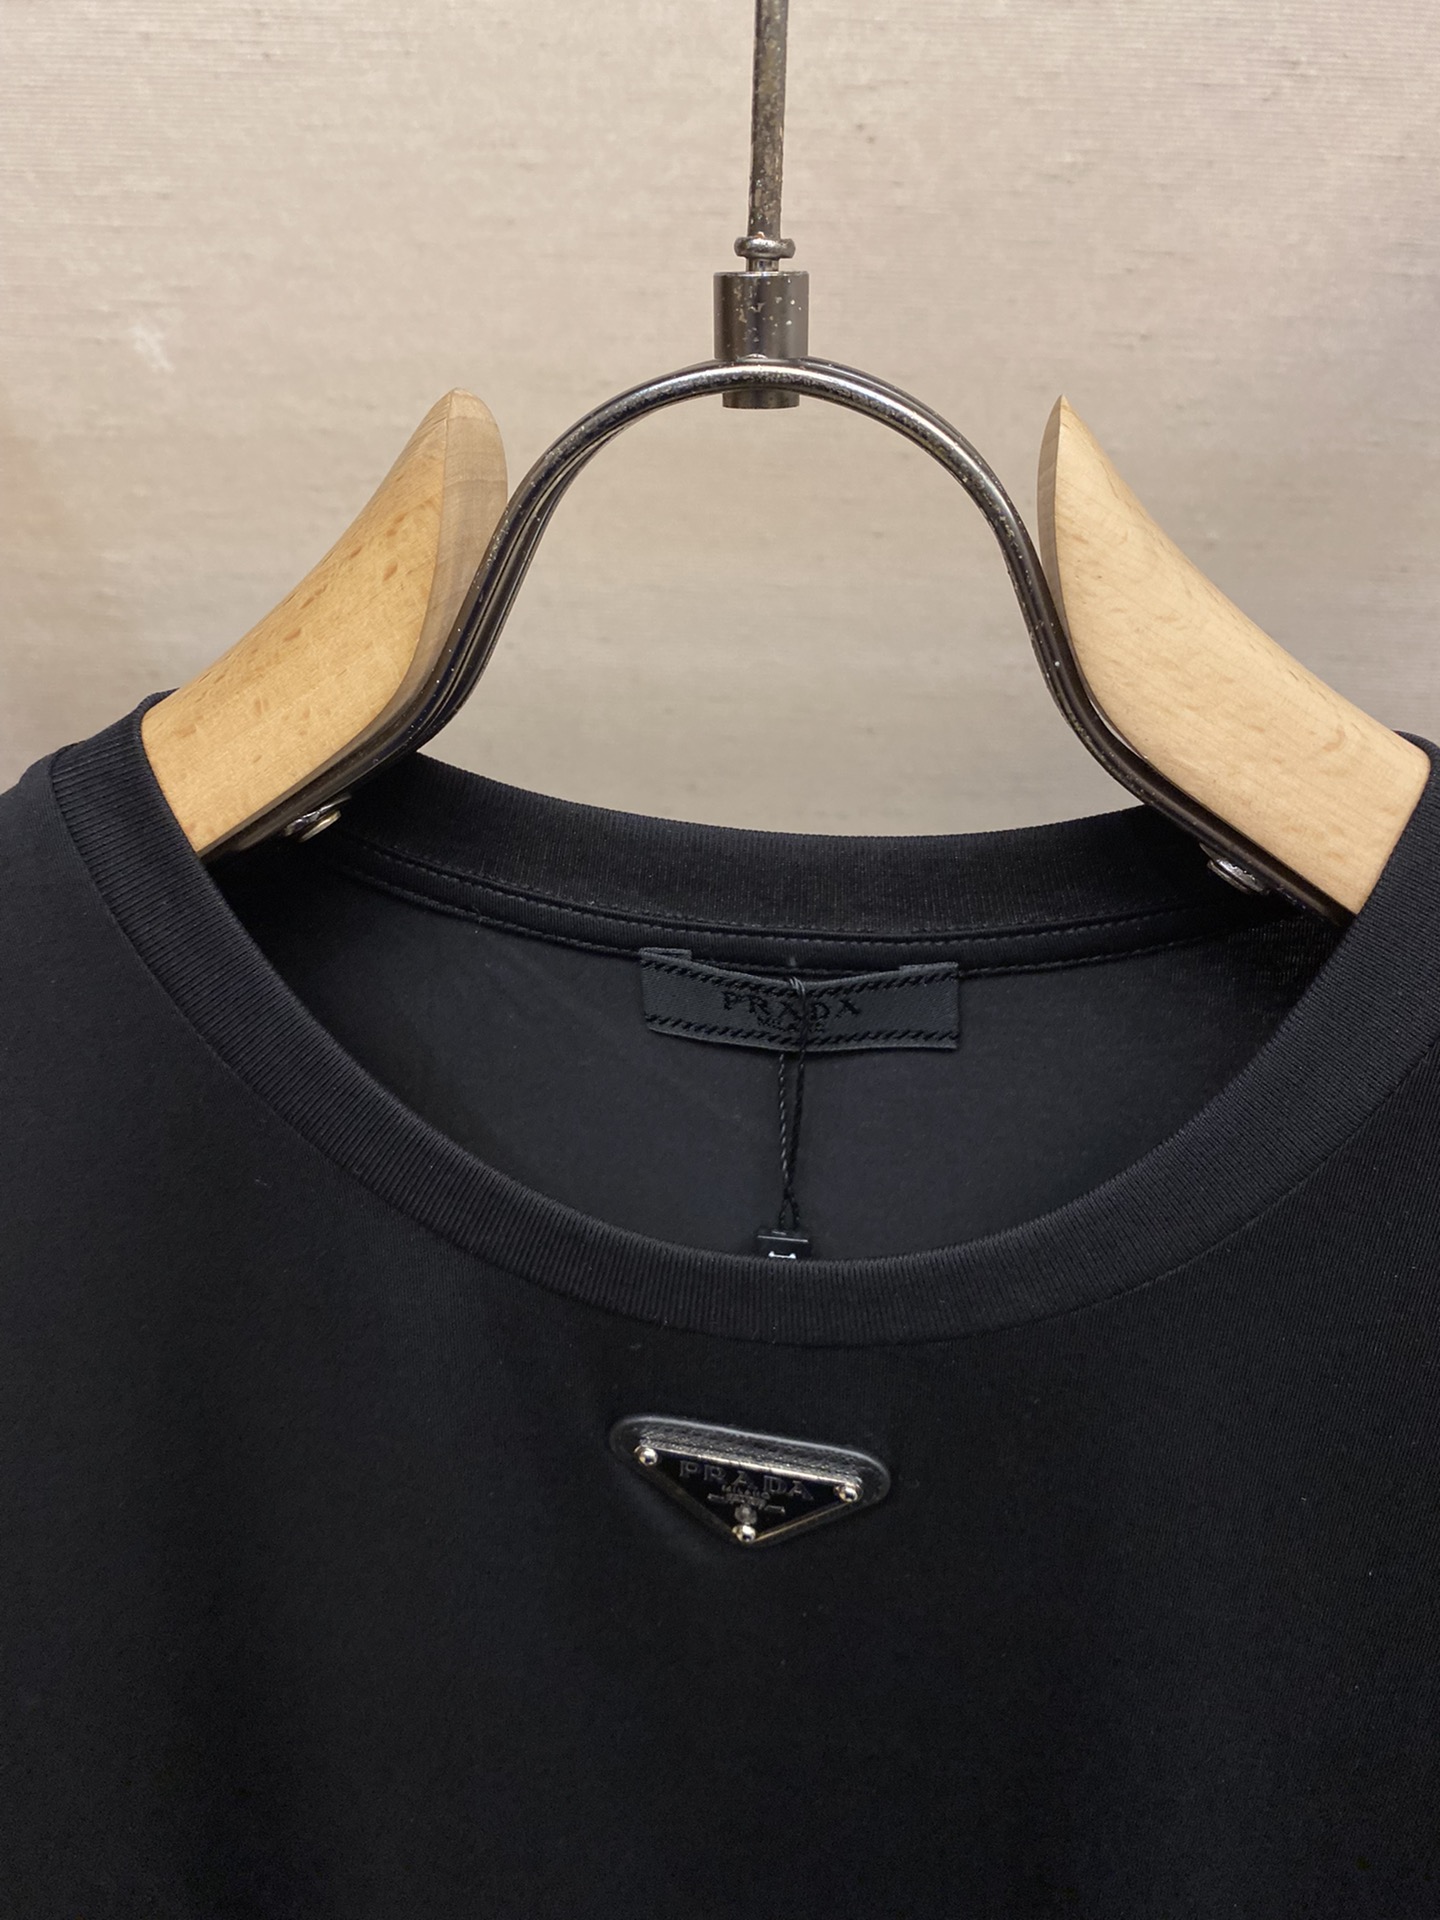 Prada新款短袖yyds日常出门闭眼搭定制丝光弹力棉面料短袖T恤魅力在于创造了简约奢华感的时尚,随意搭